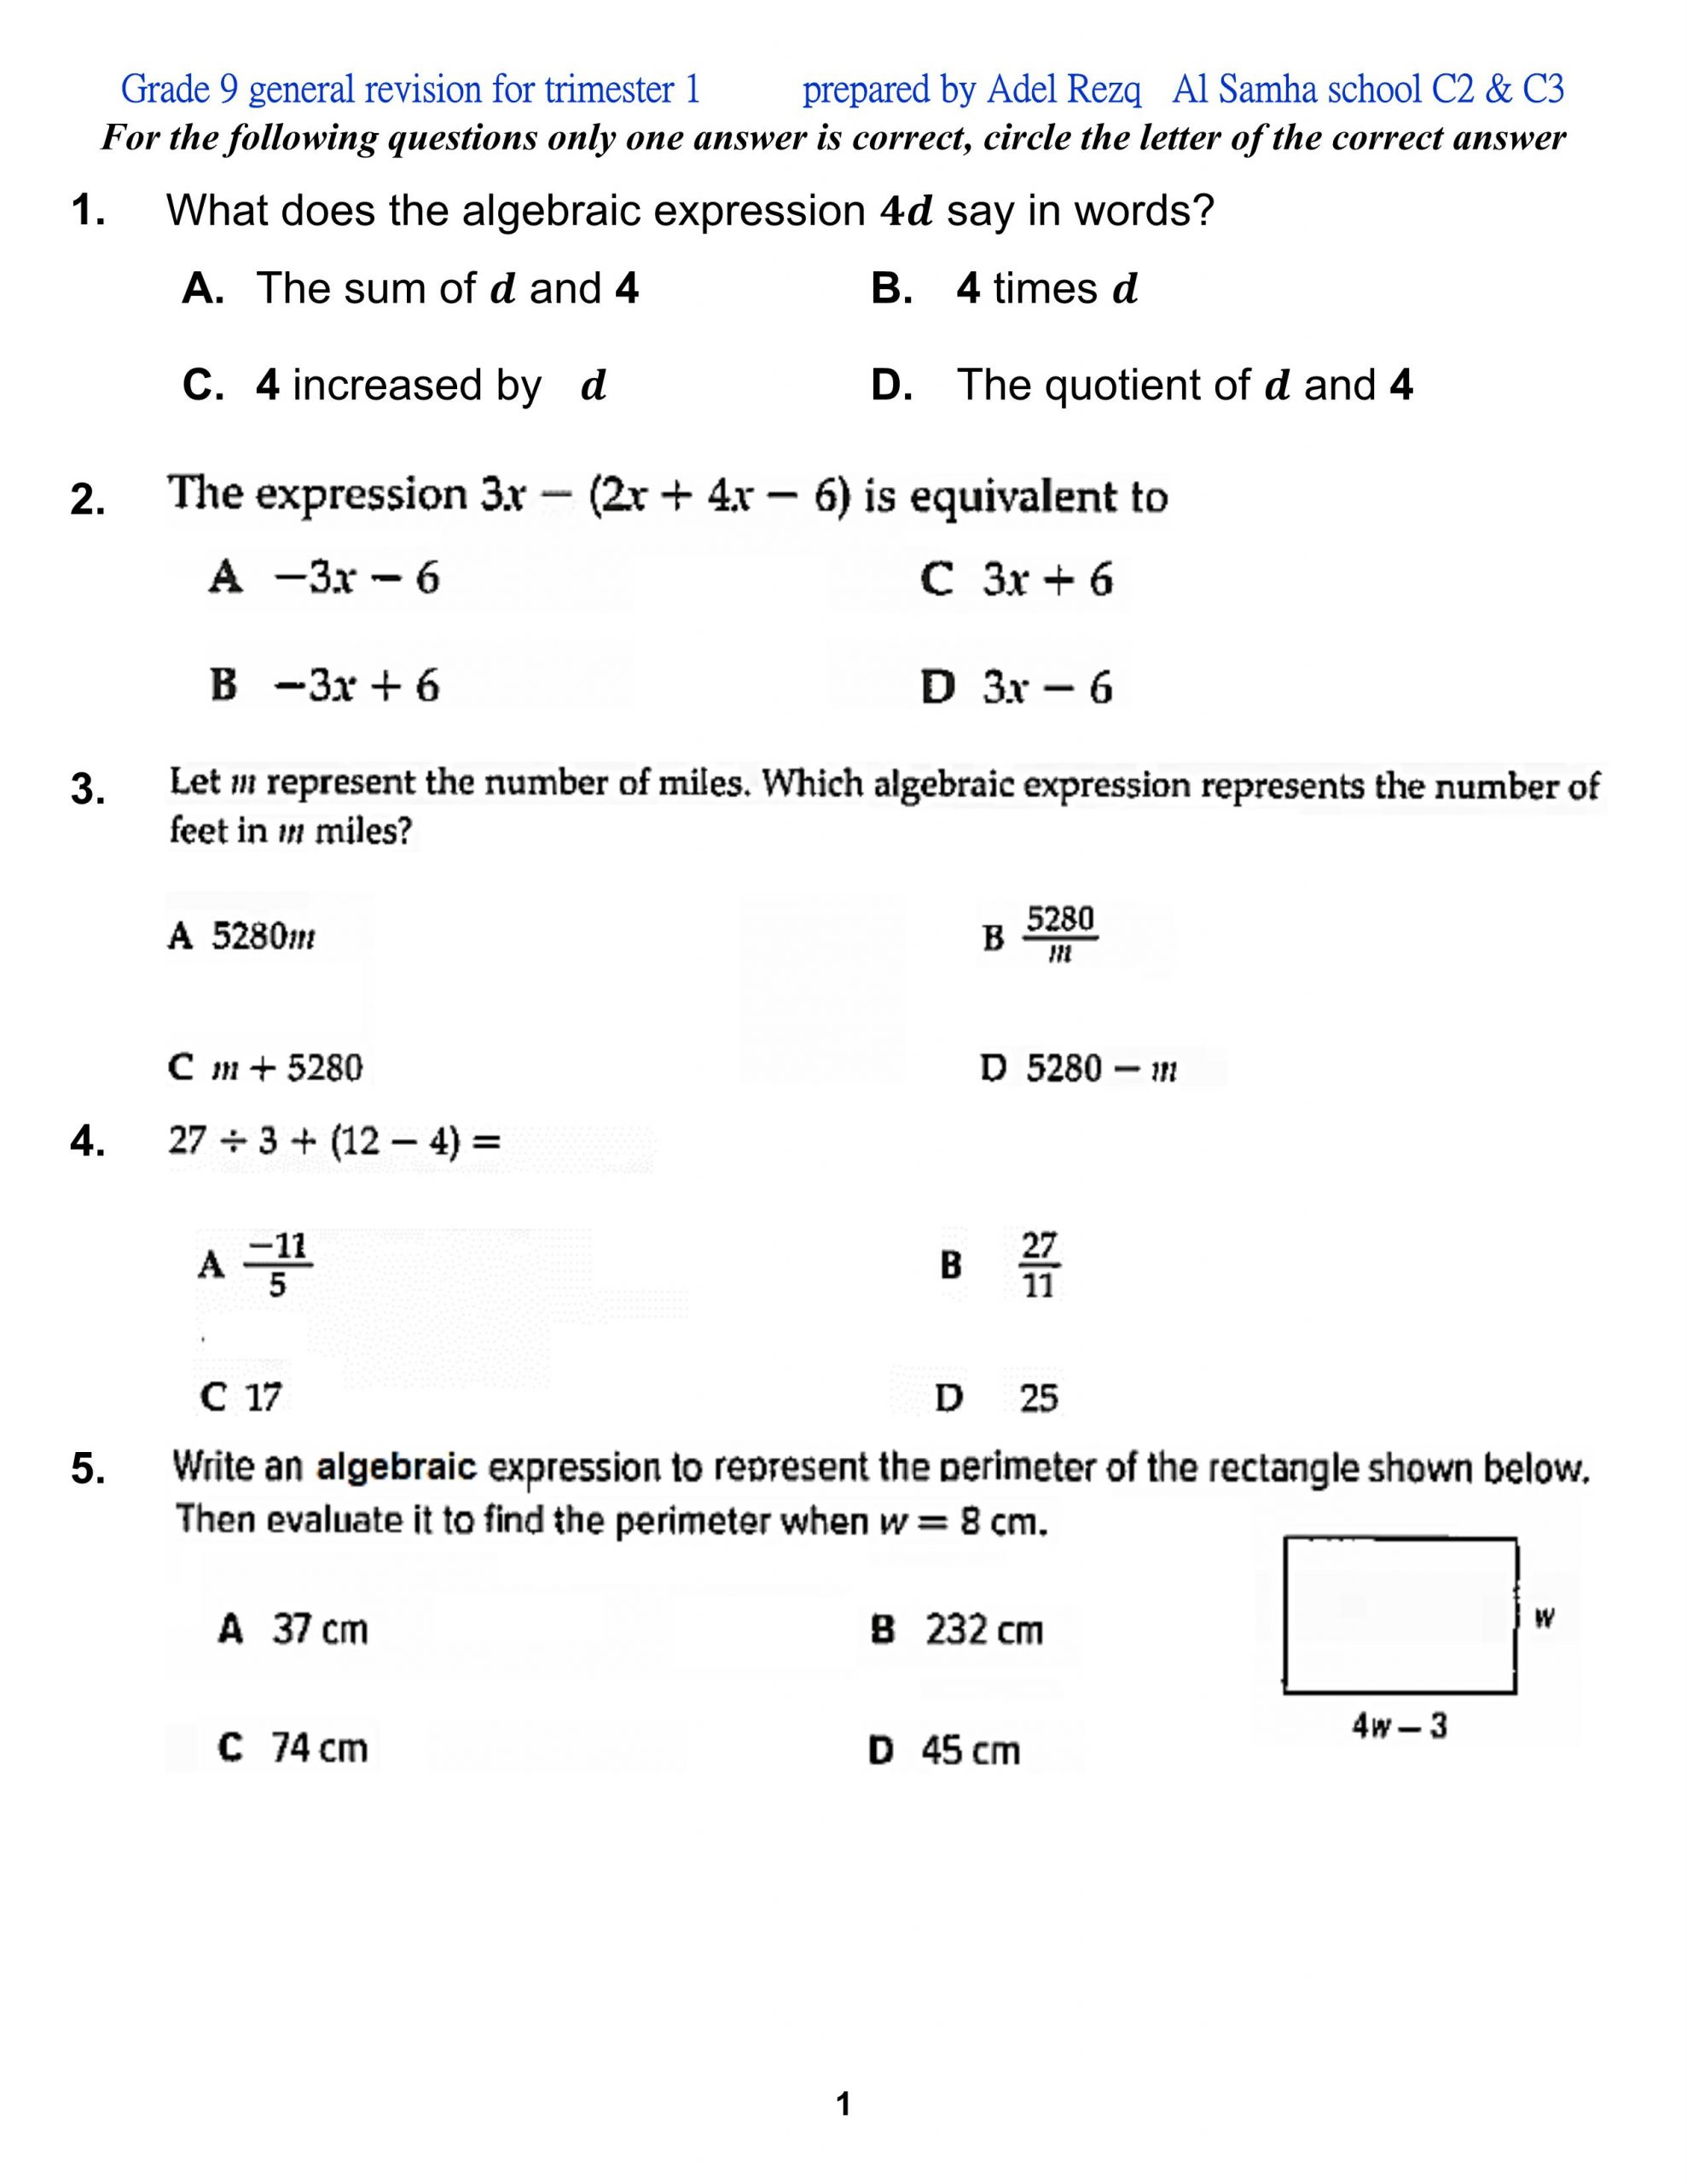 اوراق عمل مراجعة بالانجليزي الصف التاسع مادة الرياضيات المتكاملة